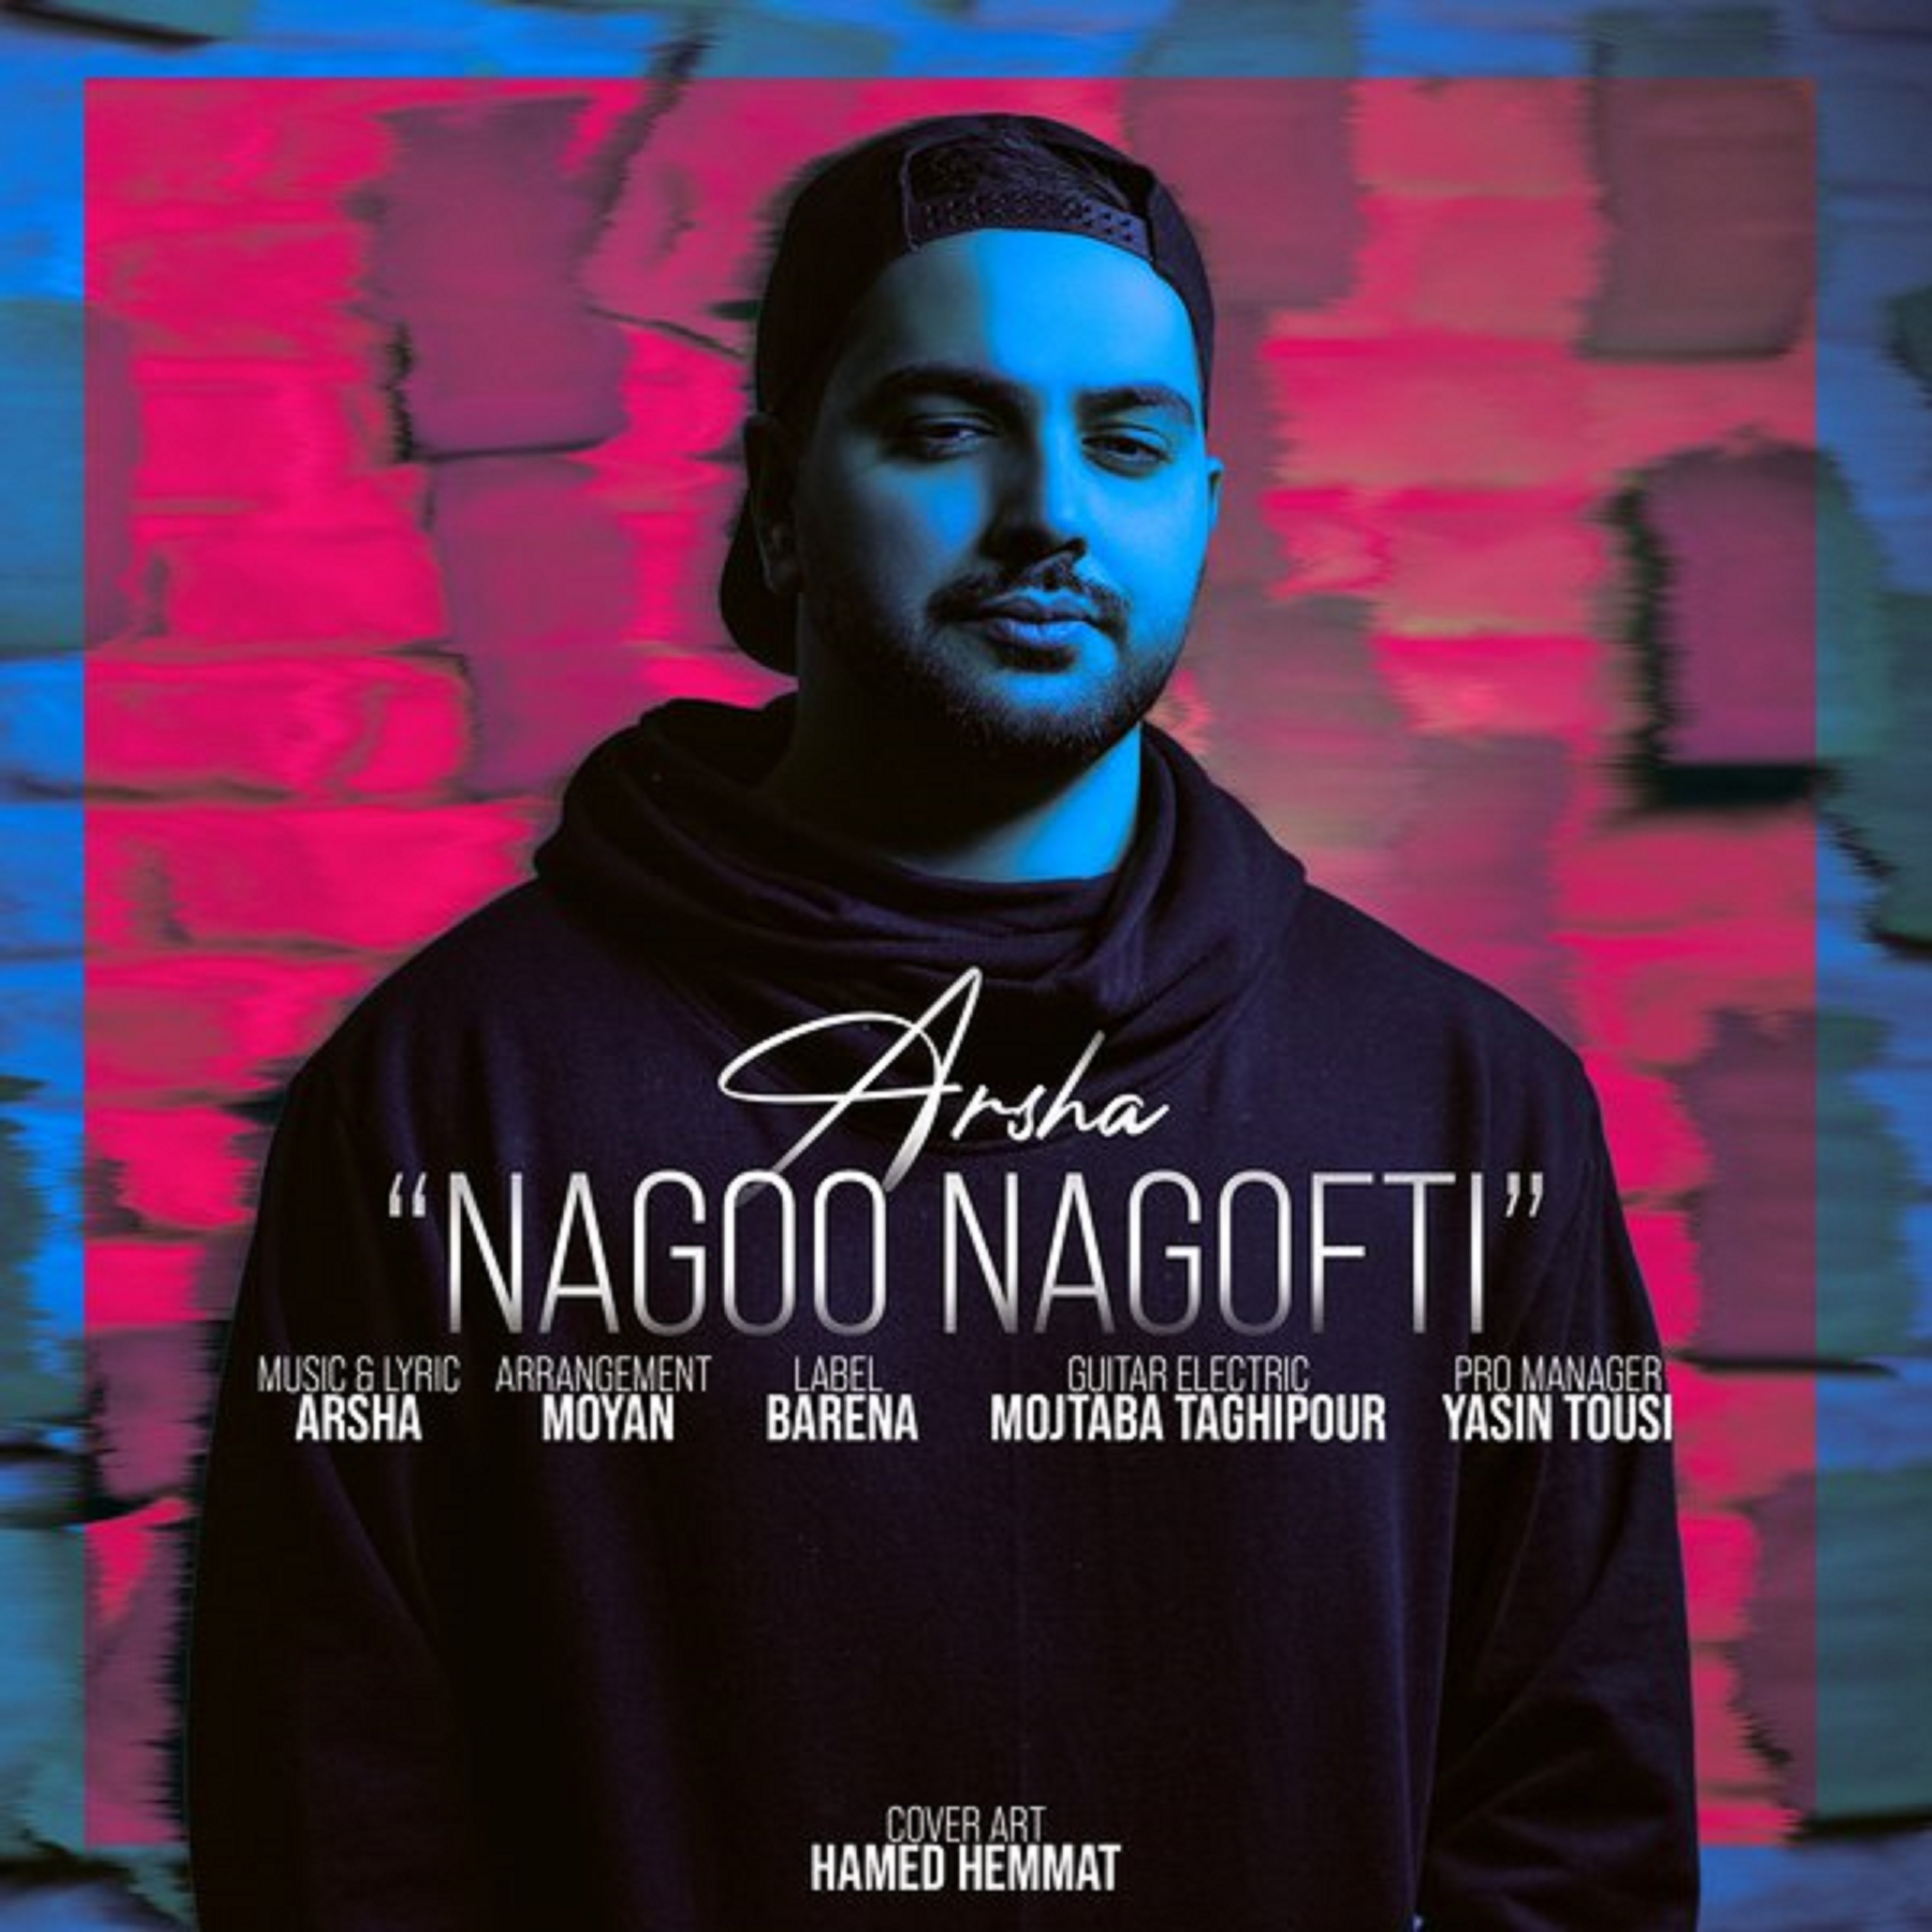  دانلود آهنگ جدید آرشا - نگو نگفتی | Download New Music By Arsha - Nagoo Nagofti